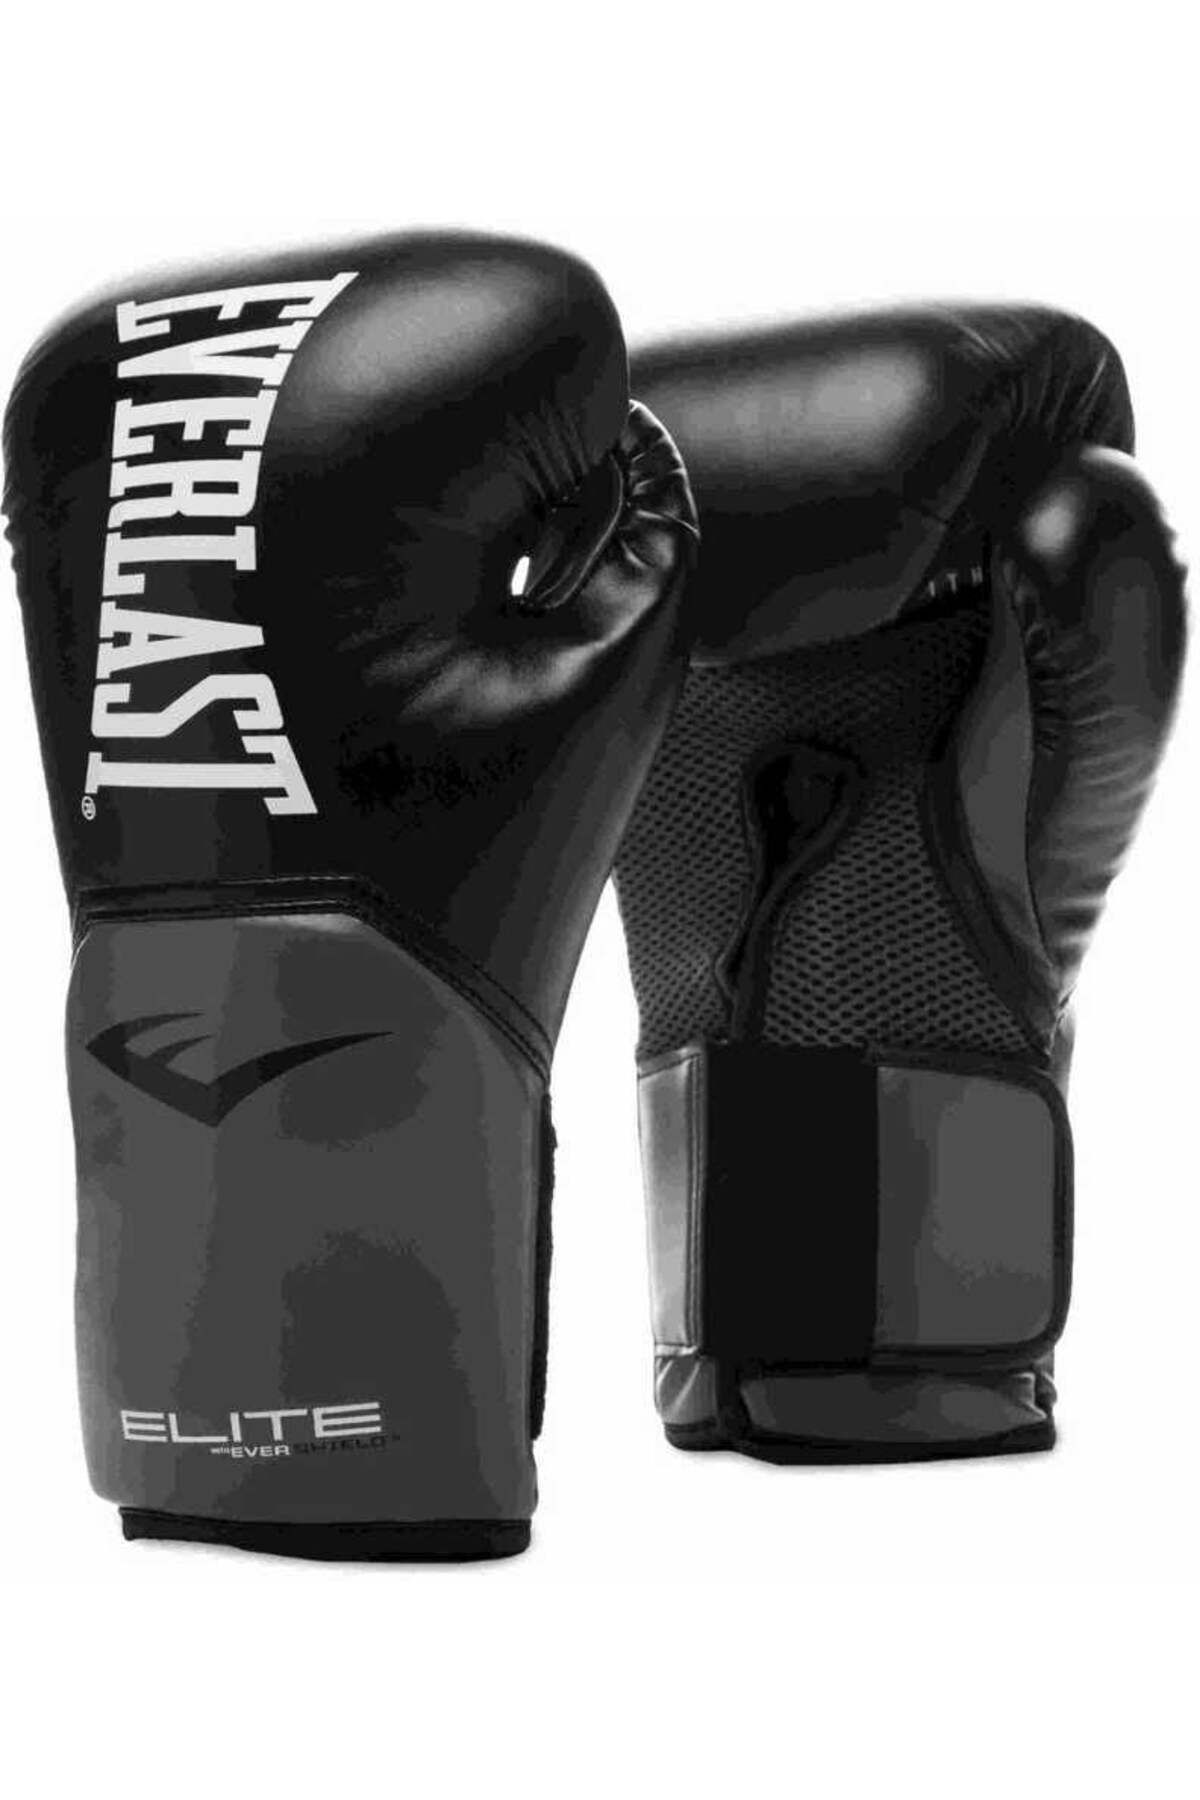 Everlast Pro Style Elite Glove Siyah Boks Eğitim Eldiveni 14 Oz 870274-70